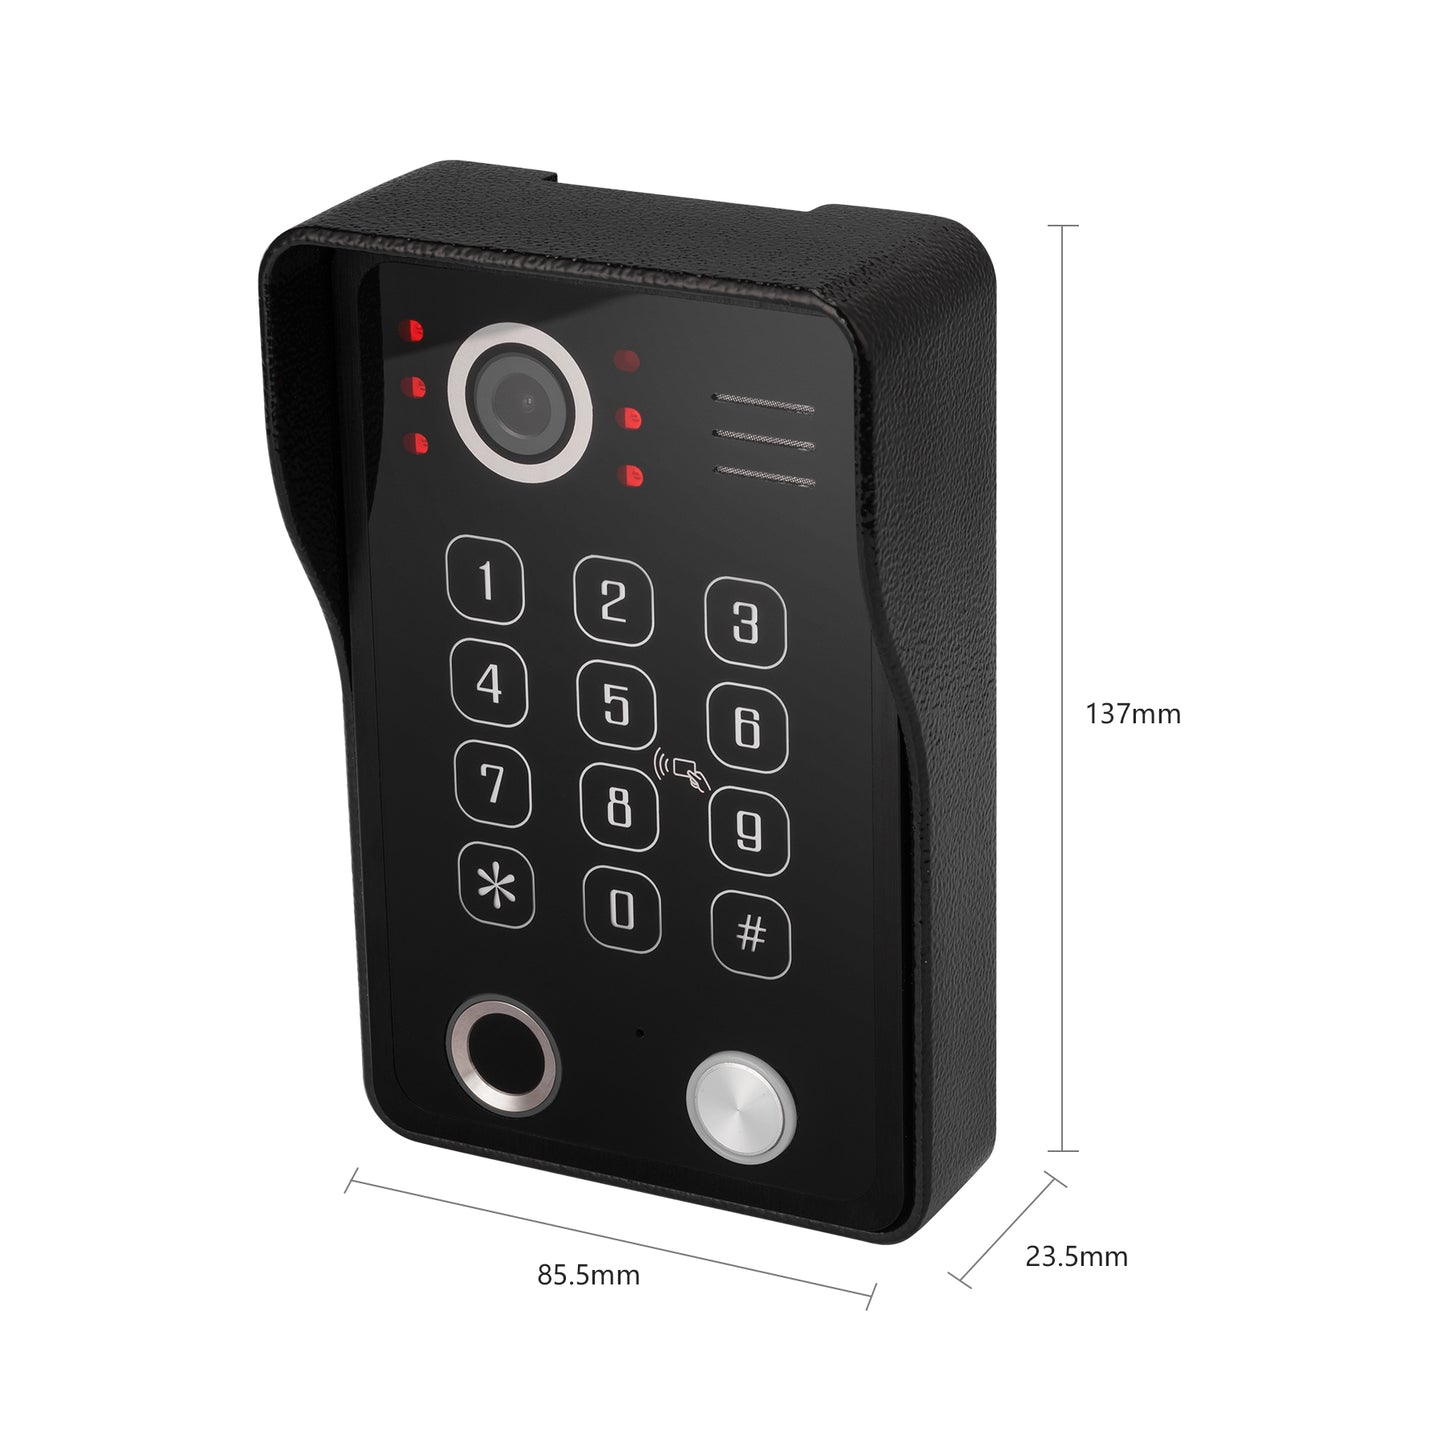 AnjieloSmart  Video DoorPhone DoorBell Waterproof Wide Angle Lens with RFID Card Passcode and fingerprint unlock